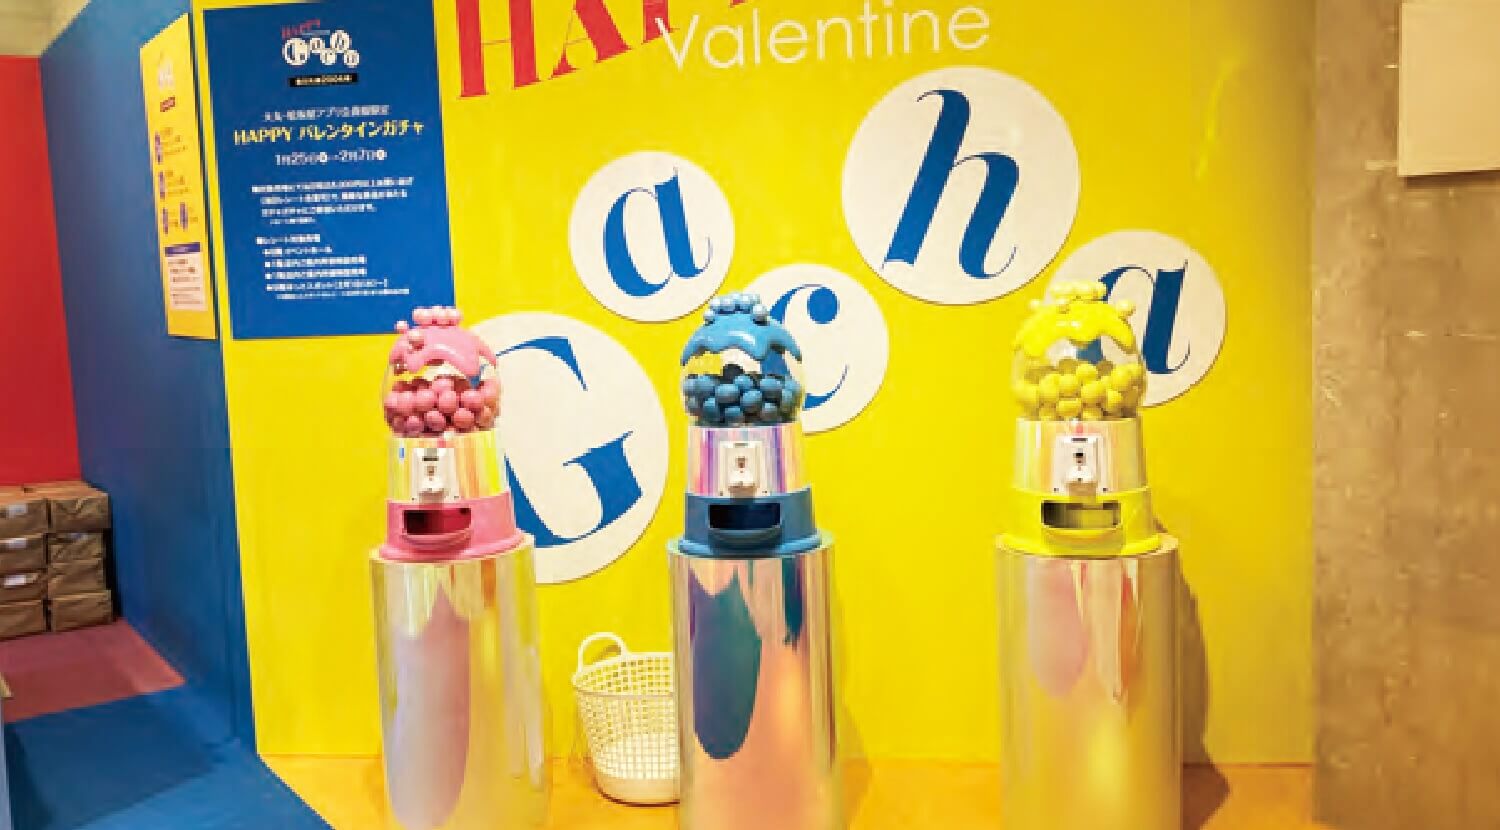 大丸京都店のバレンタイン会場入り口左手に並ぶ化粧品サンプルがもらえるガチャガチャ